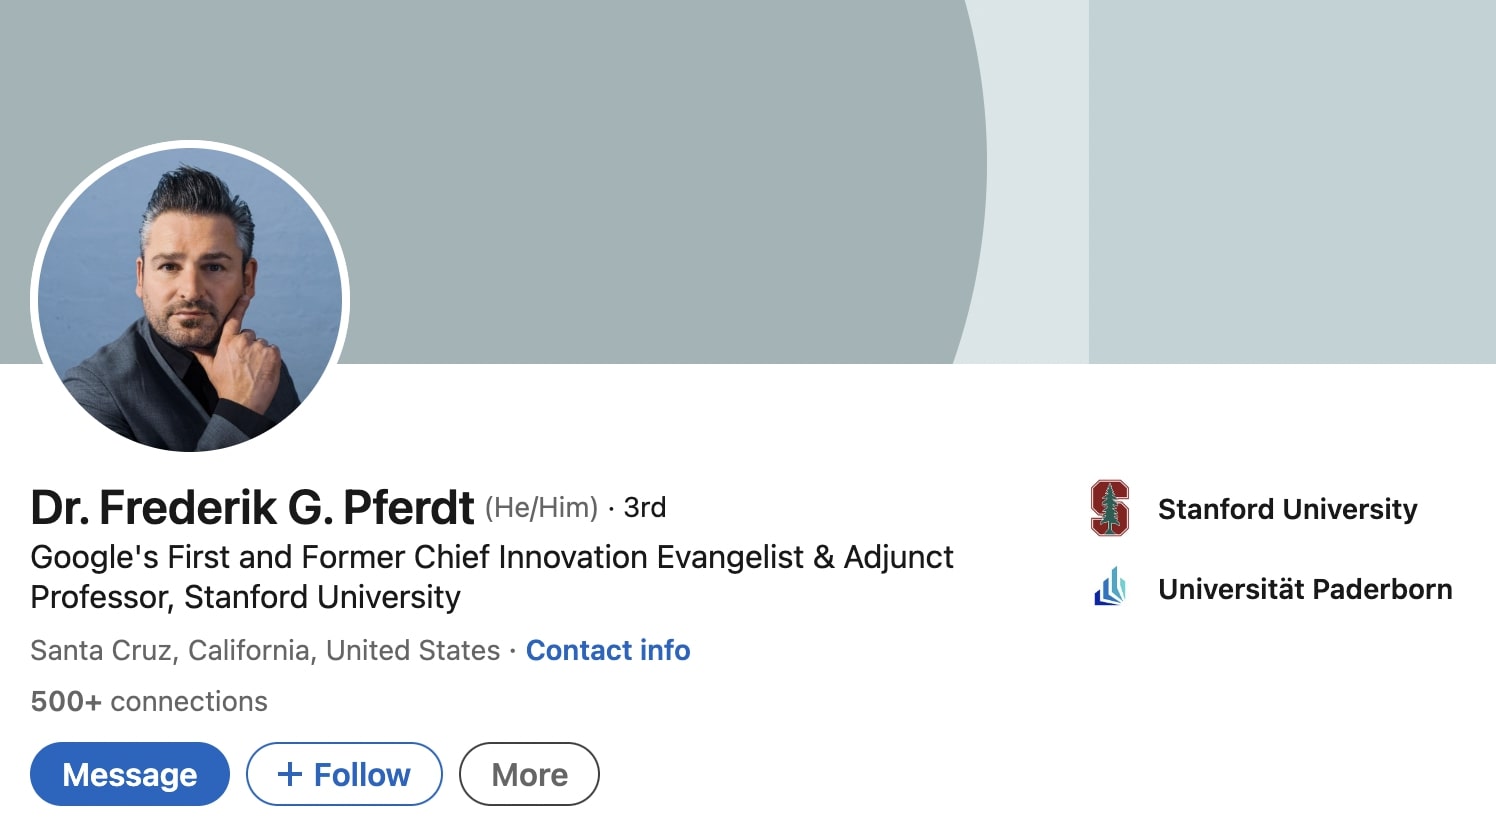 Dr. Frederik G. Pferdt's Linkedin profile